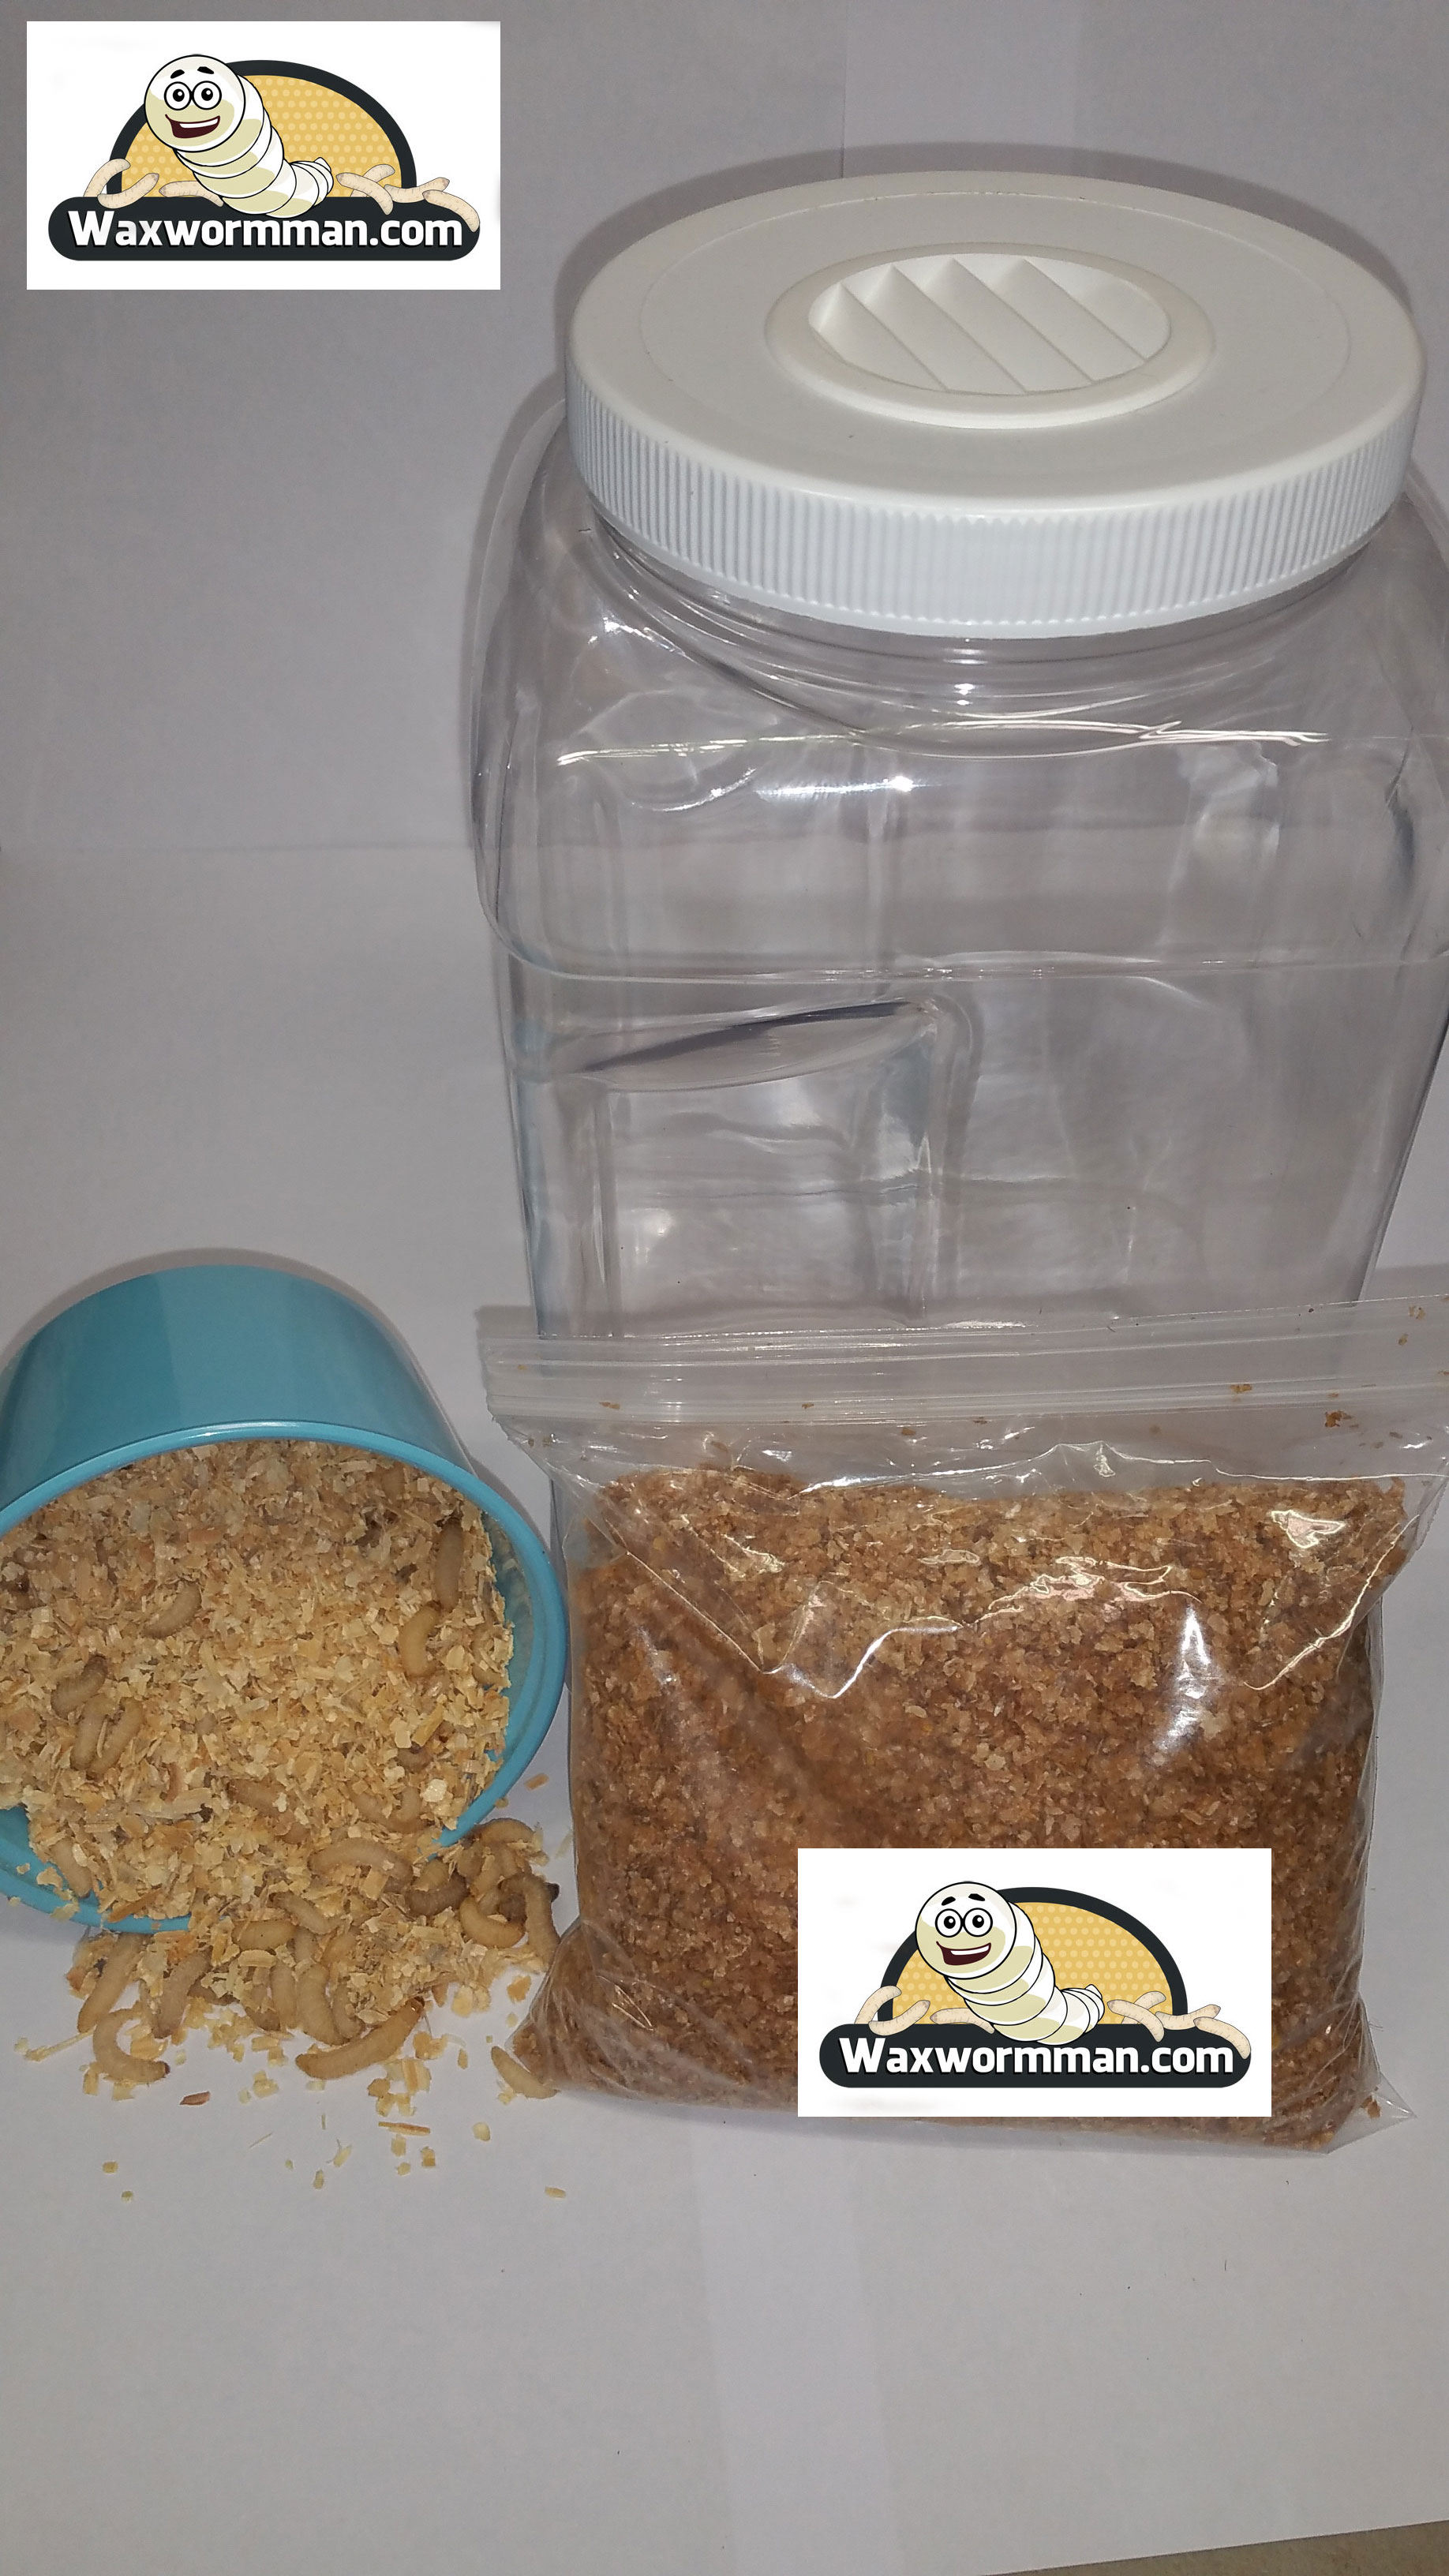 Wax Worm Breeding Kit